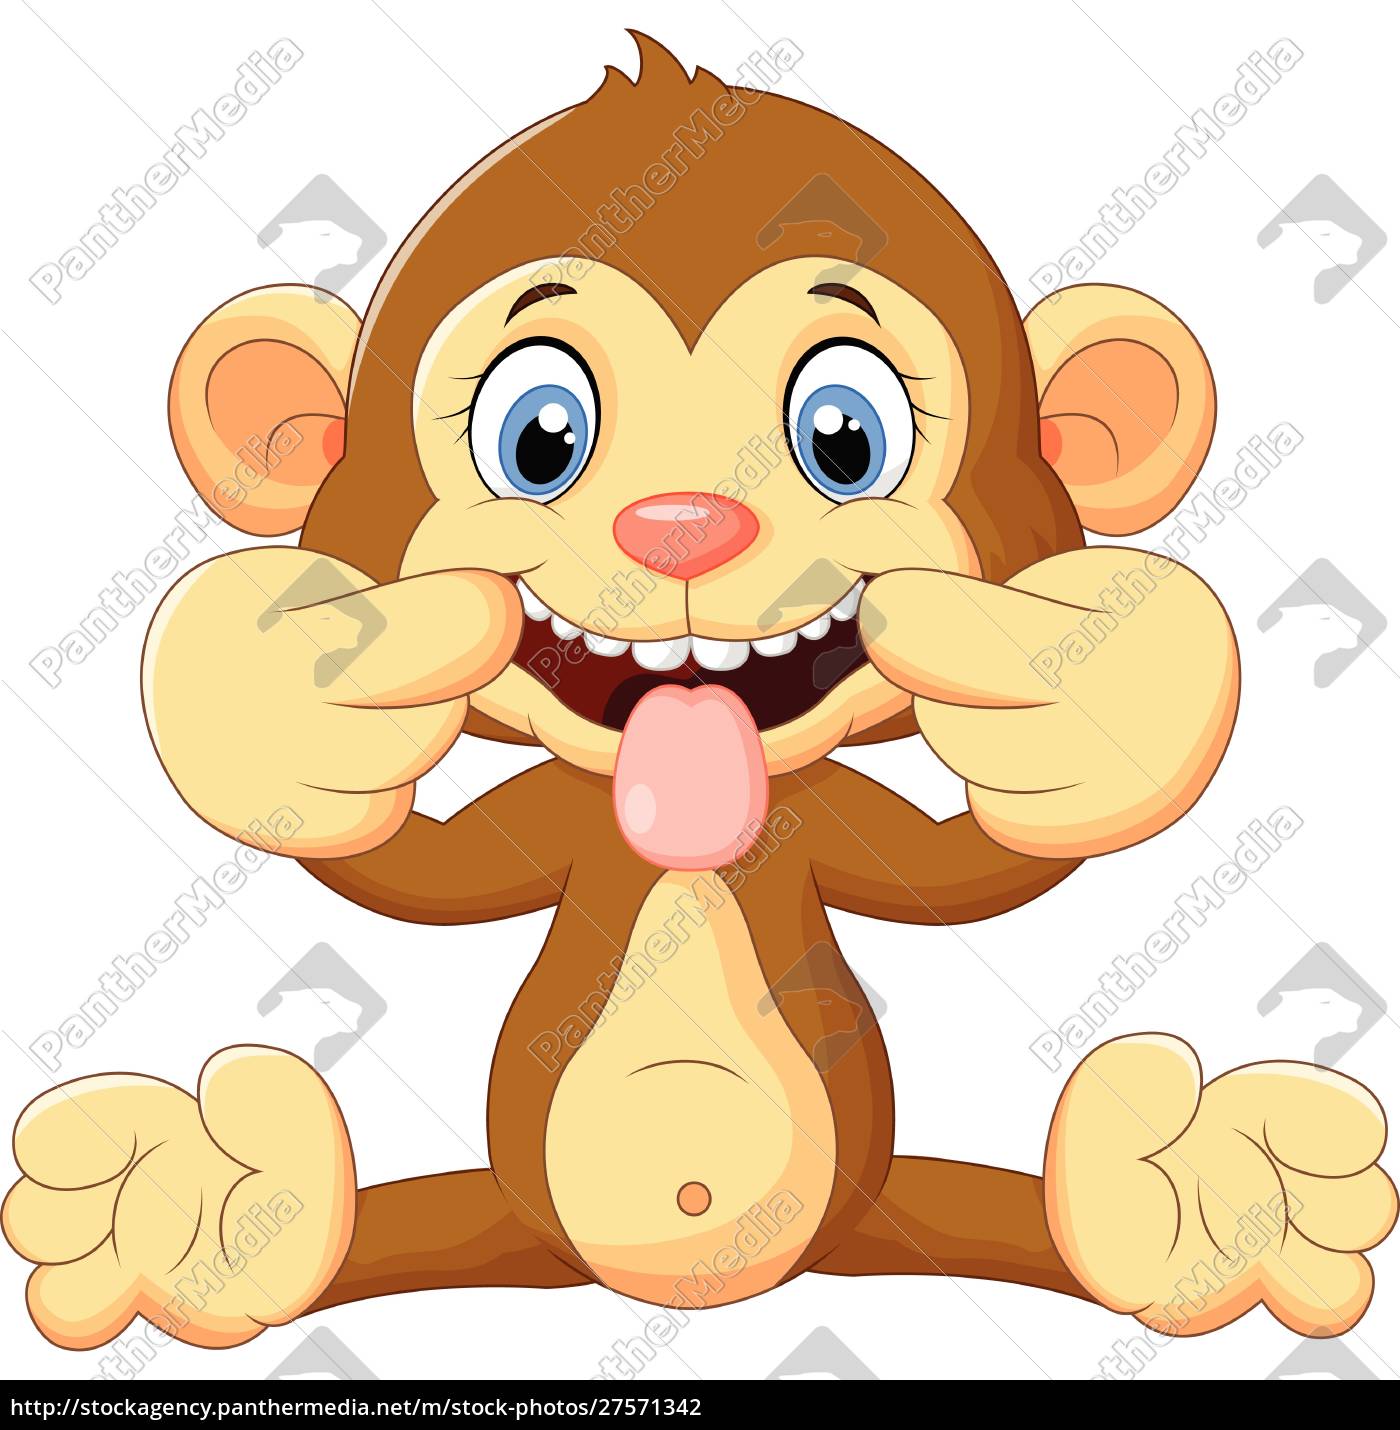 macaco engraçado dos desenhos animados sentado com sorriso